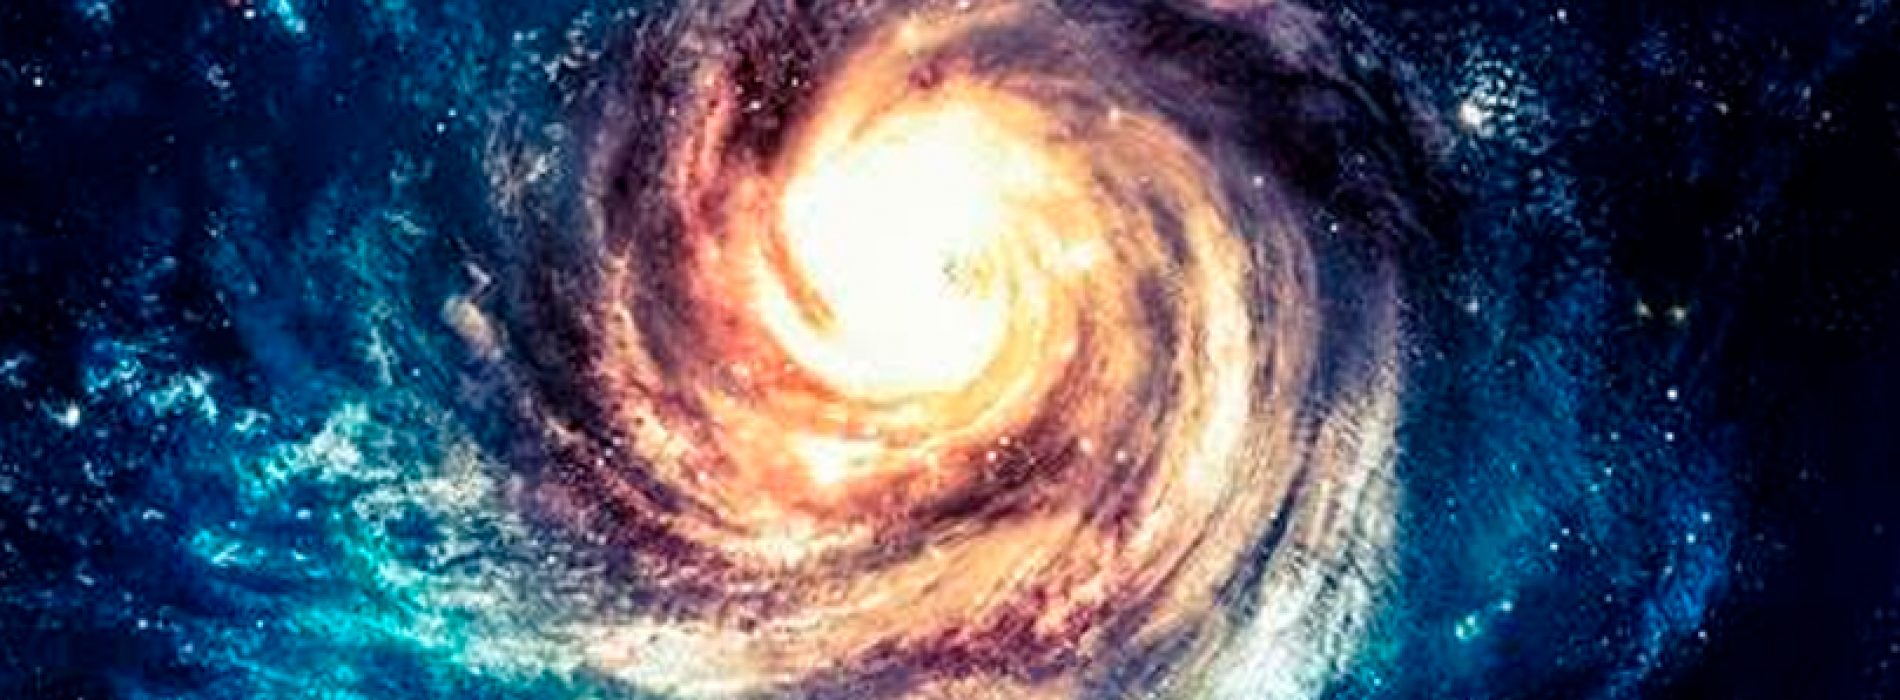 Universidad de Chile dictará curso de Galaxias para público general